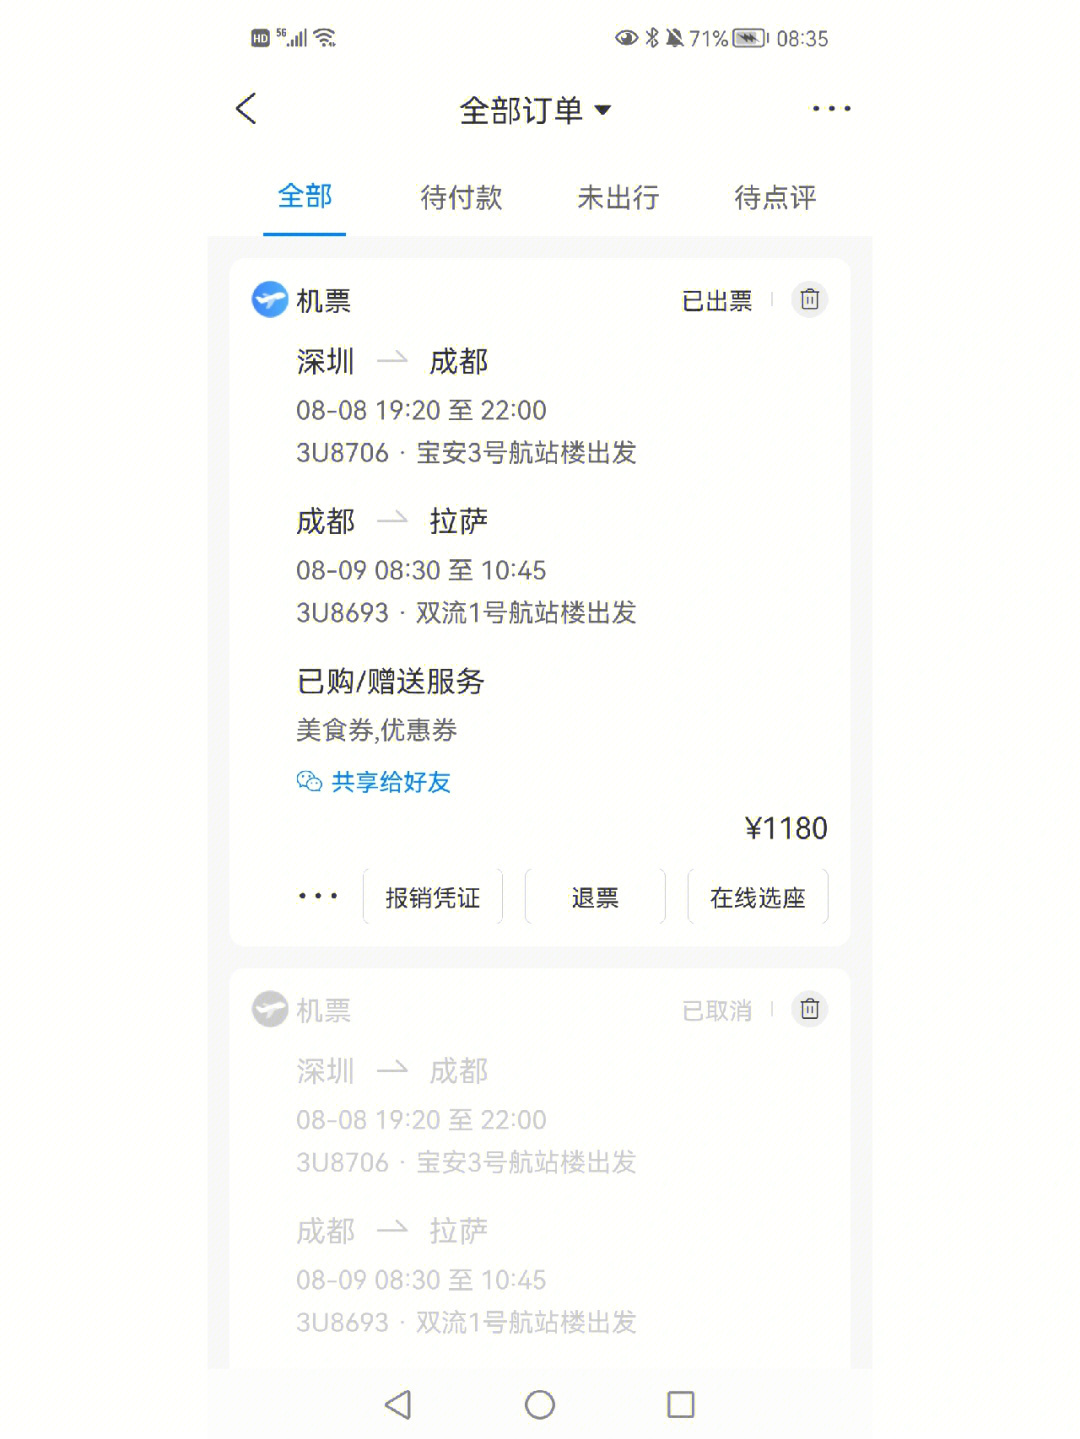 深圳飞拉萨的机票订完机票后开心了五分钟后面就开始忐忑不安,在网上